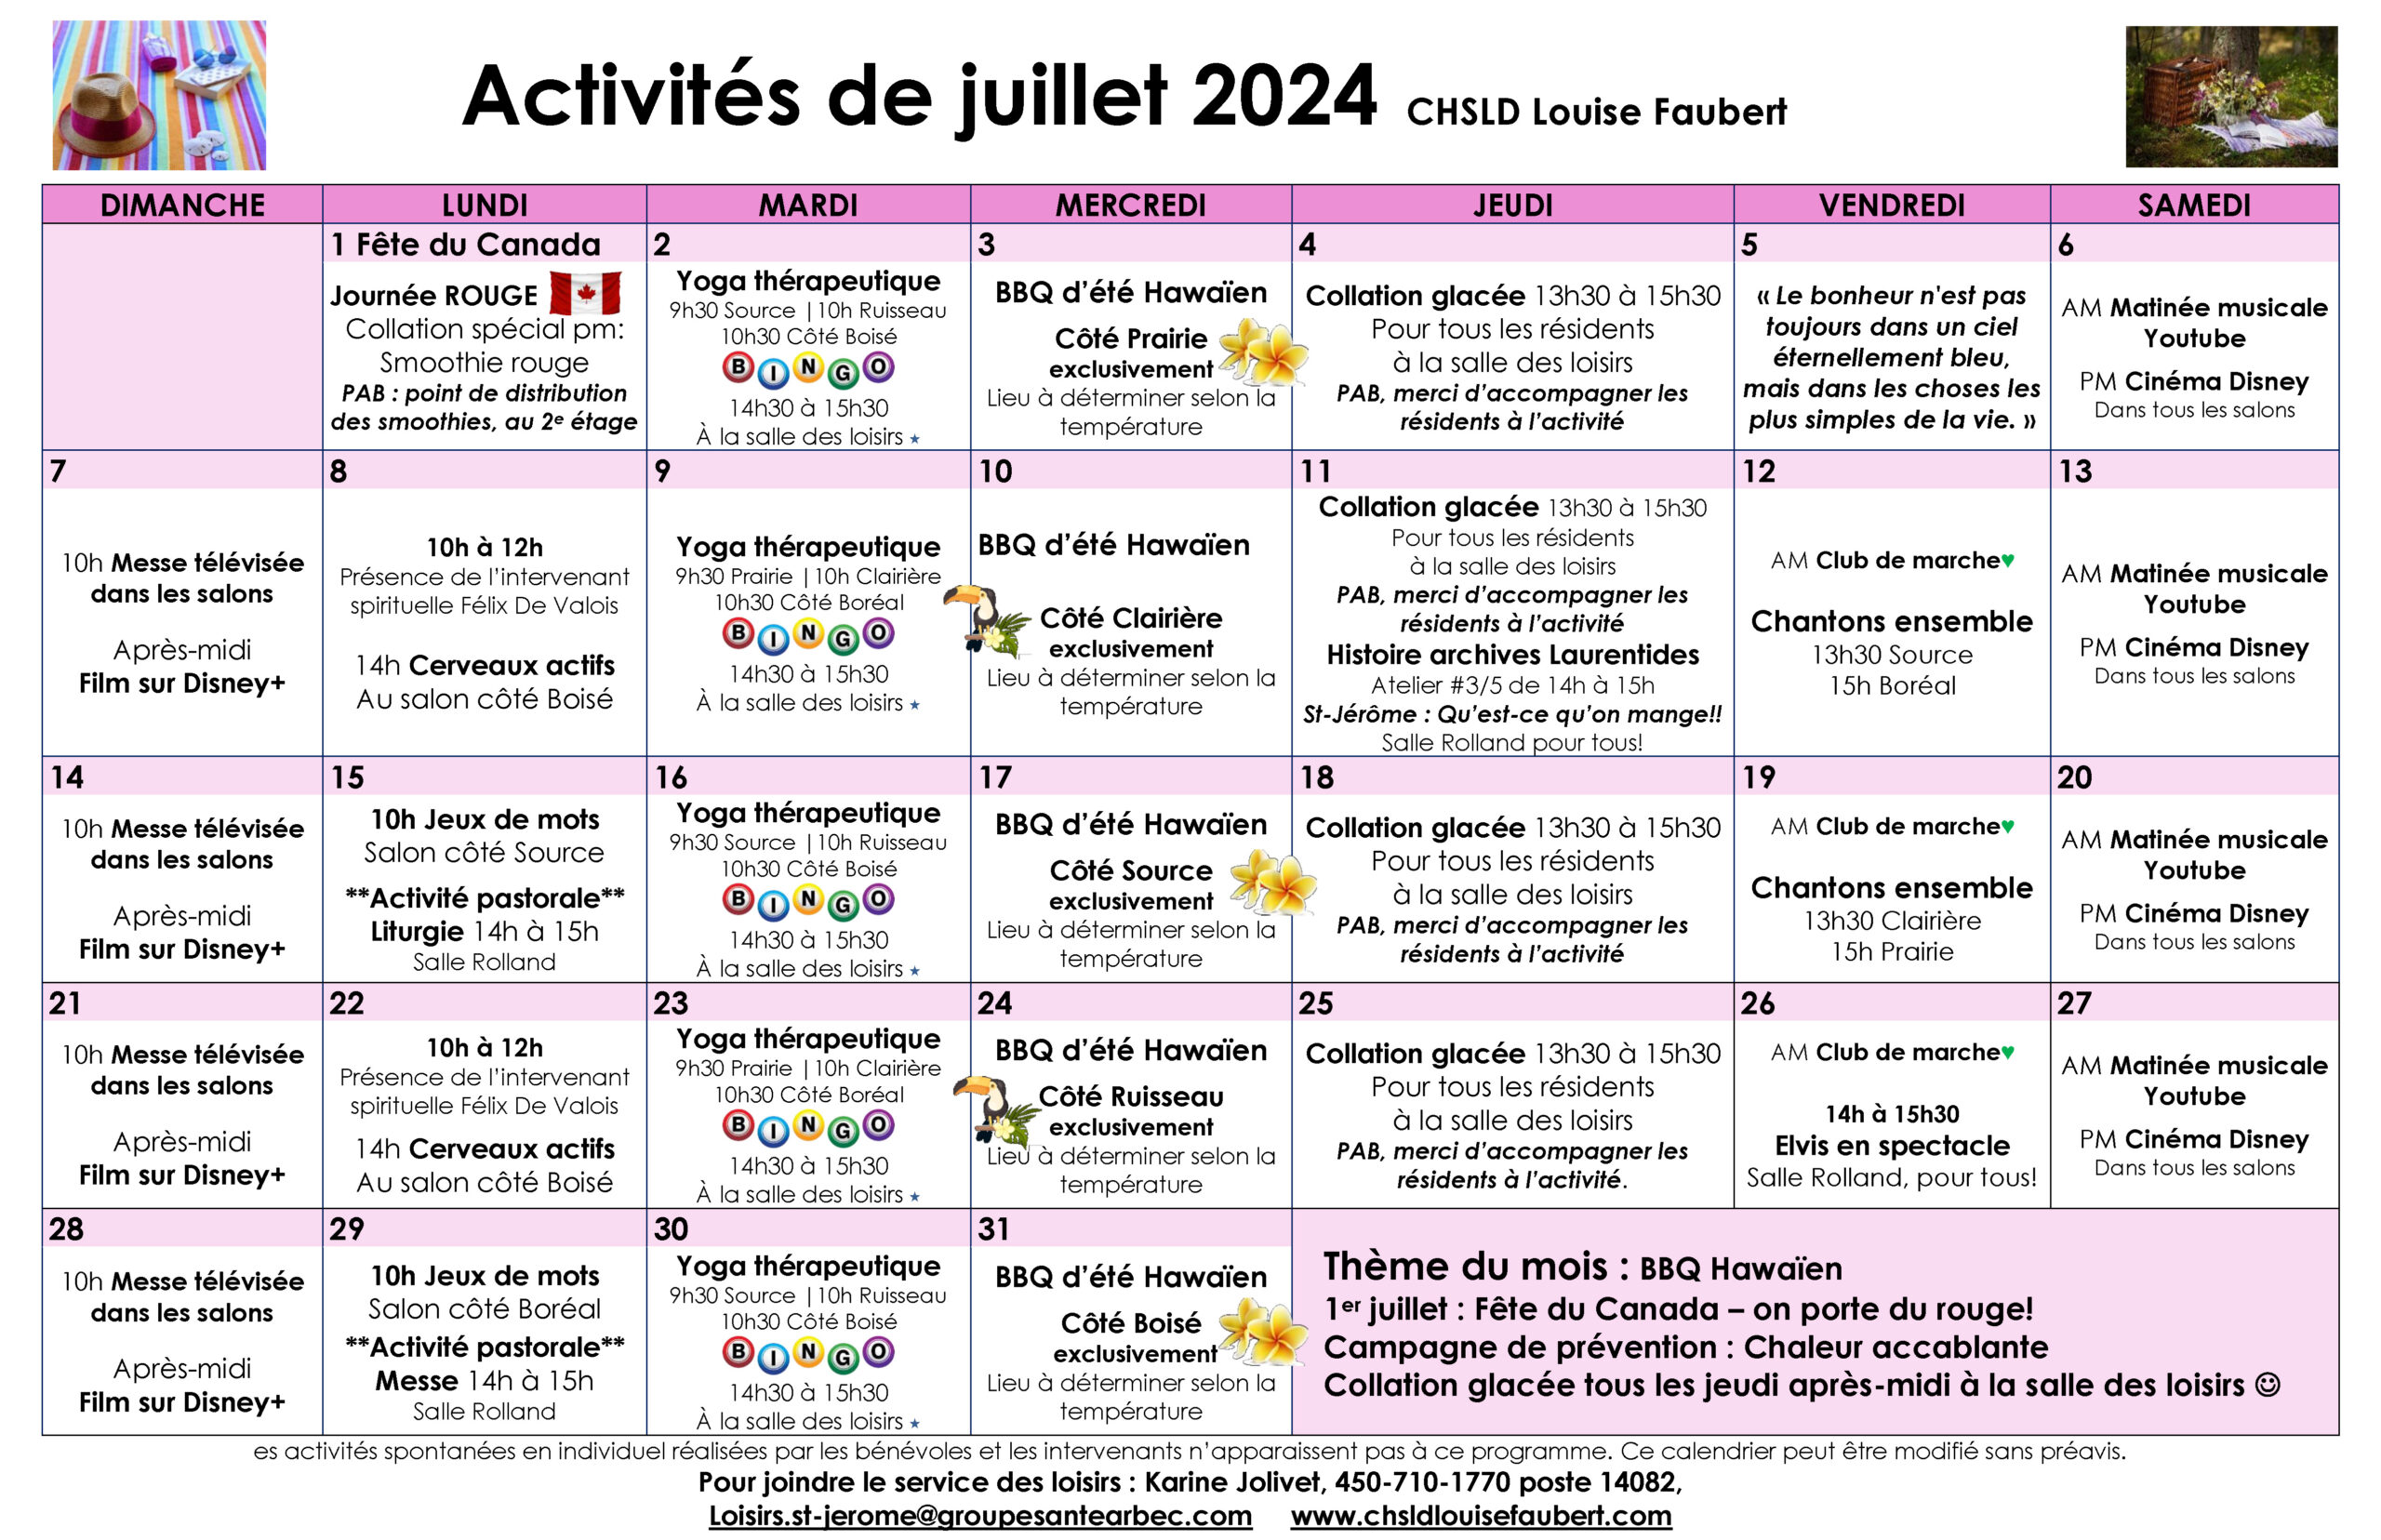 Calendrier des loisirs du mois de juillet 2024 pour les résidents du CHSLD Louise-Faubert